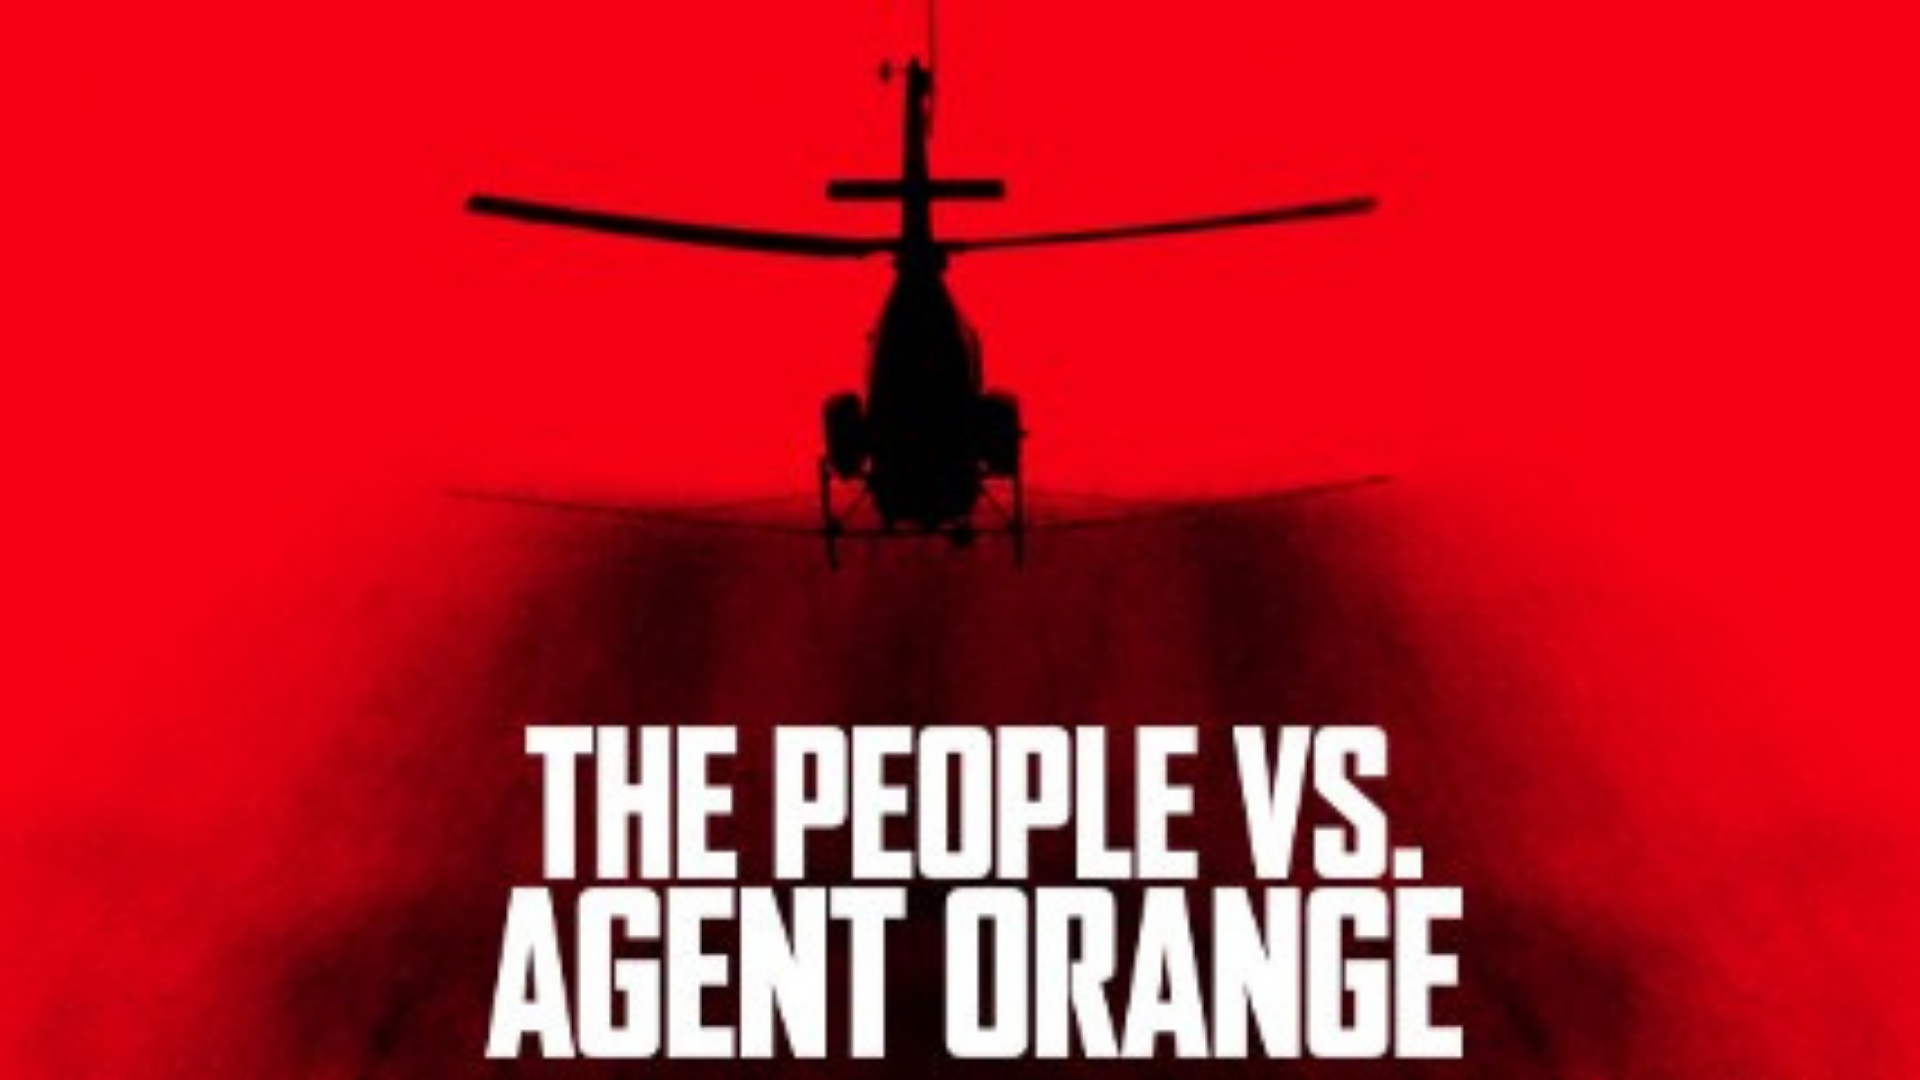 How Two Women Took on Agent Orange